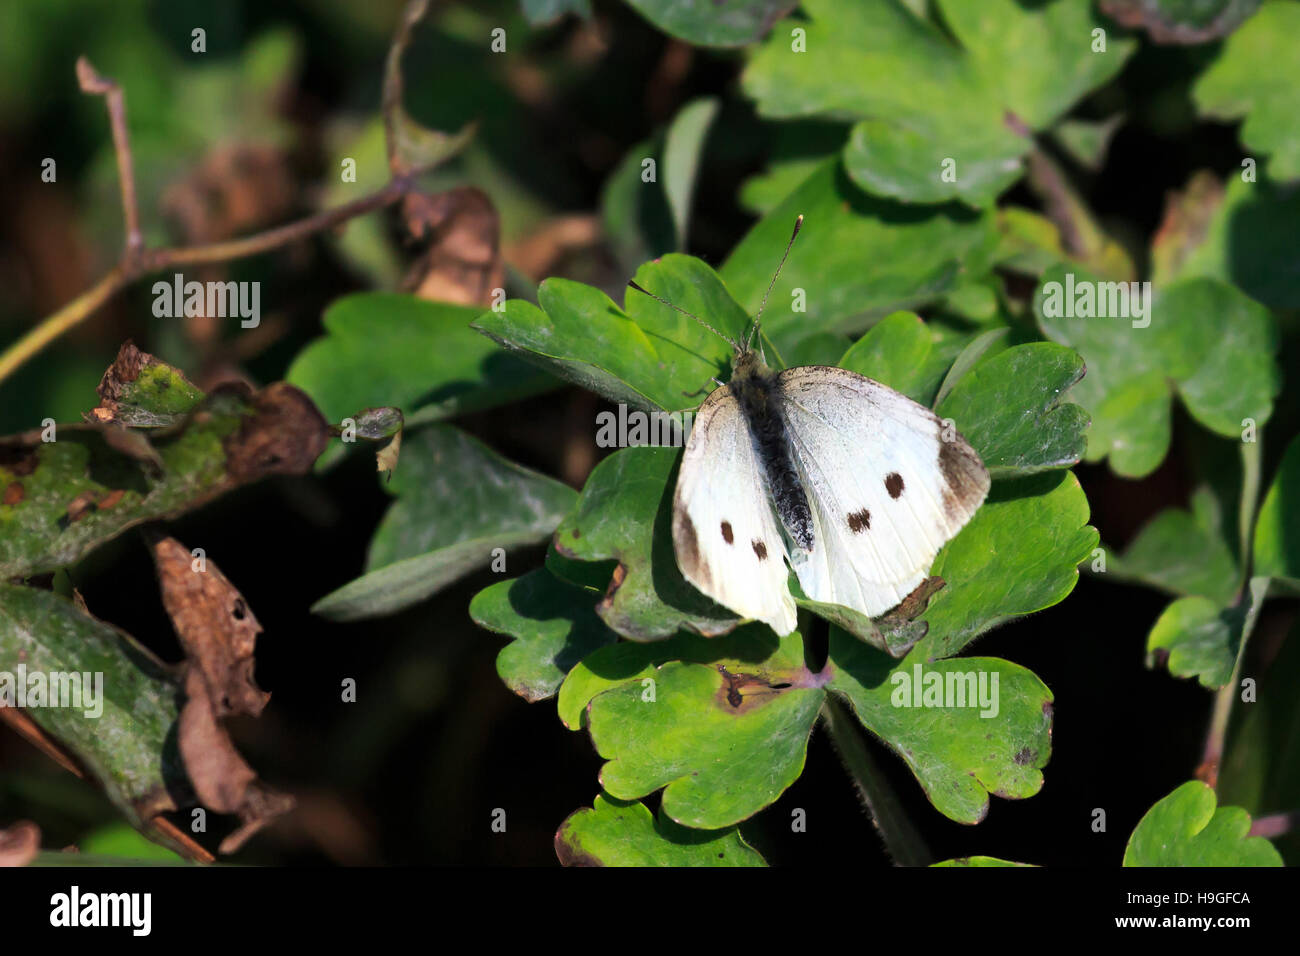 Piccola farfalla bianca in appoggio su un sun-lit lasciare in un giardino DEL REGNO UNITO Foto Stock